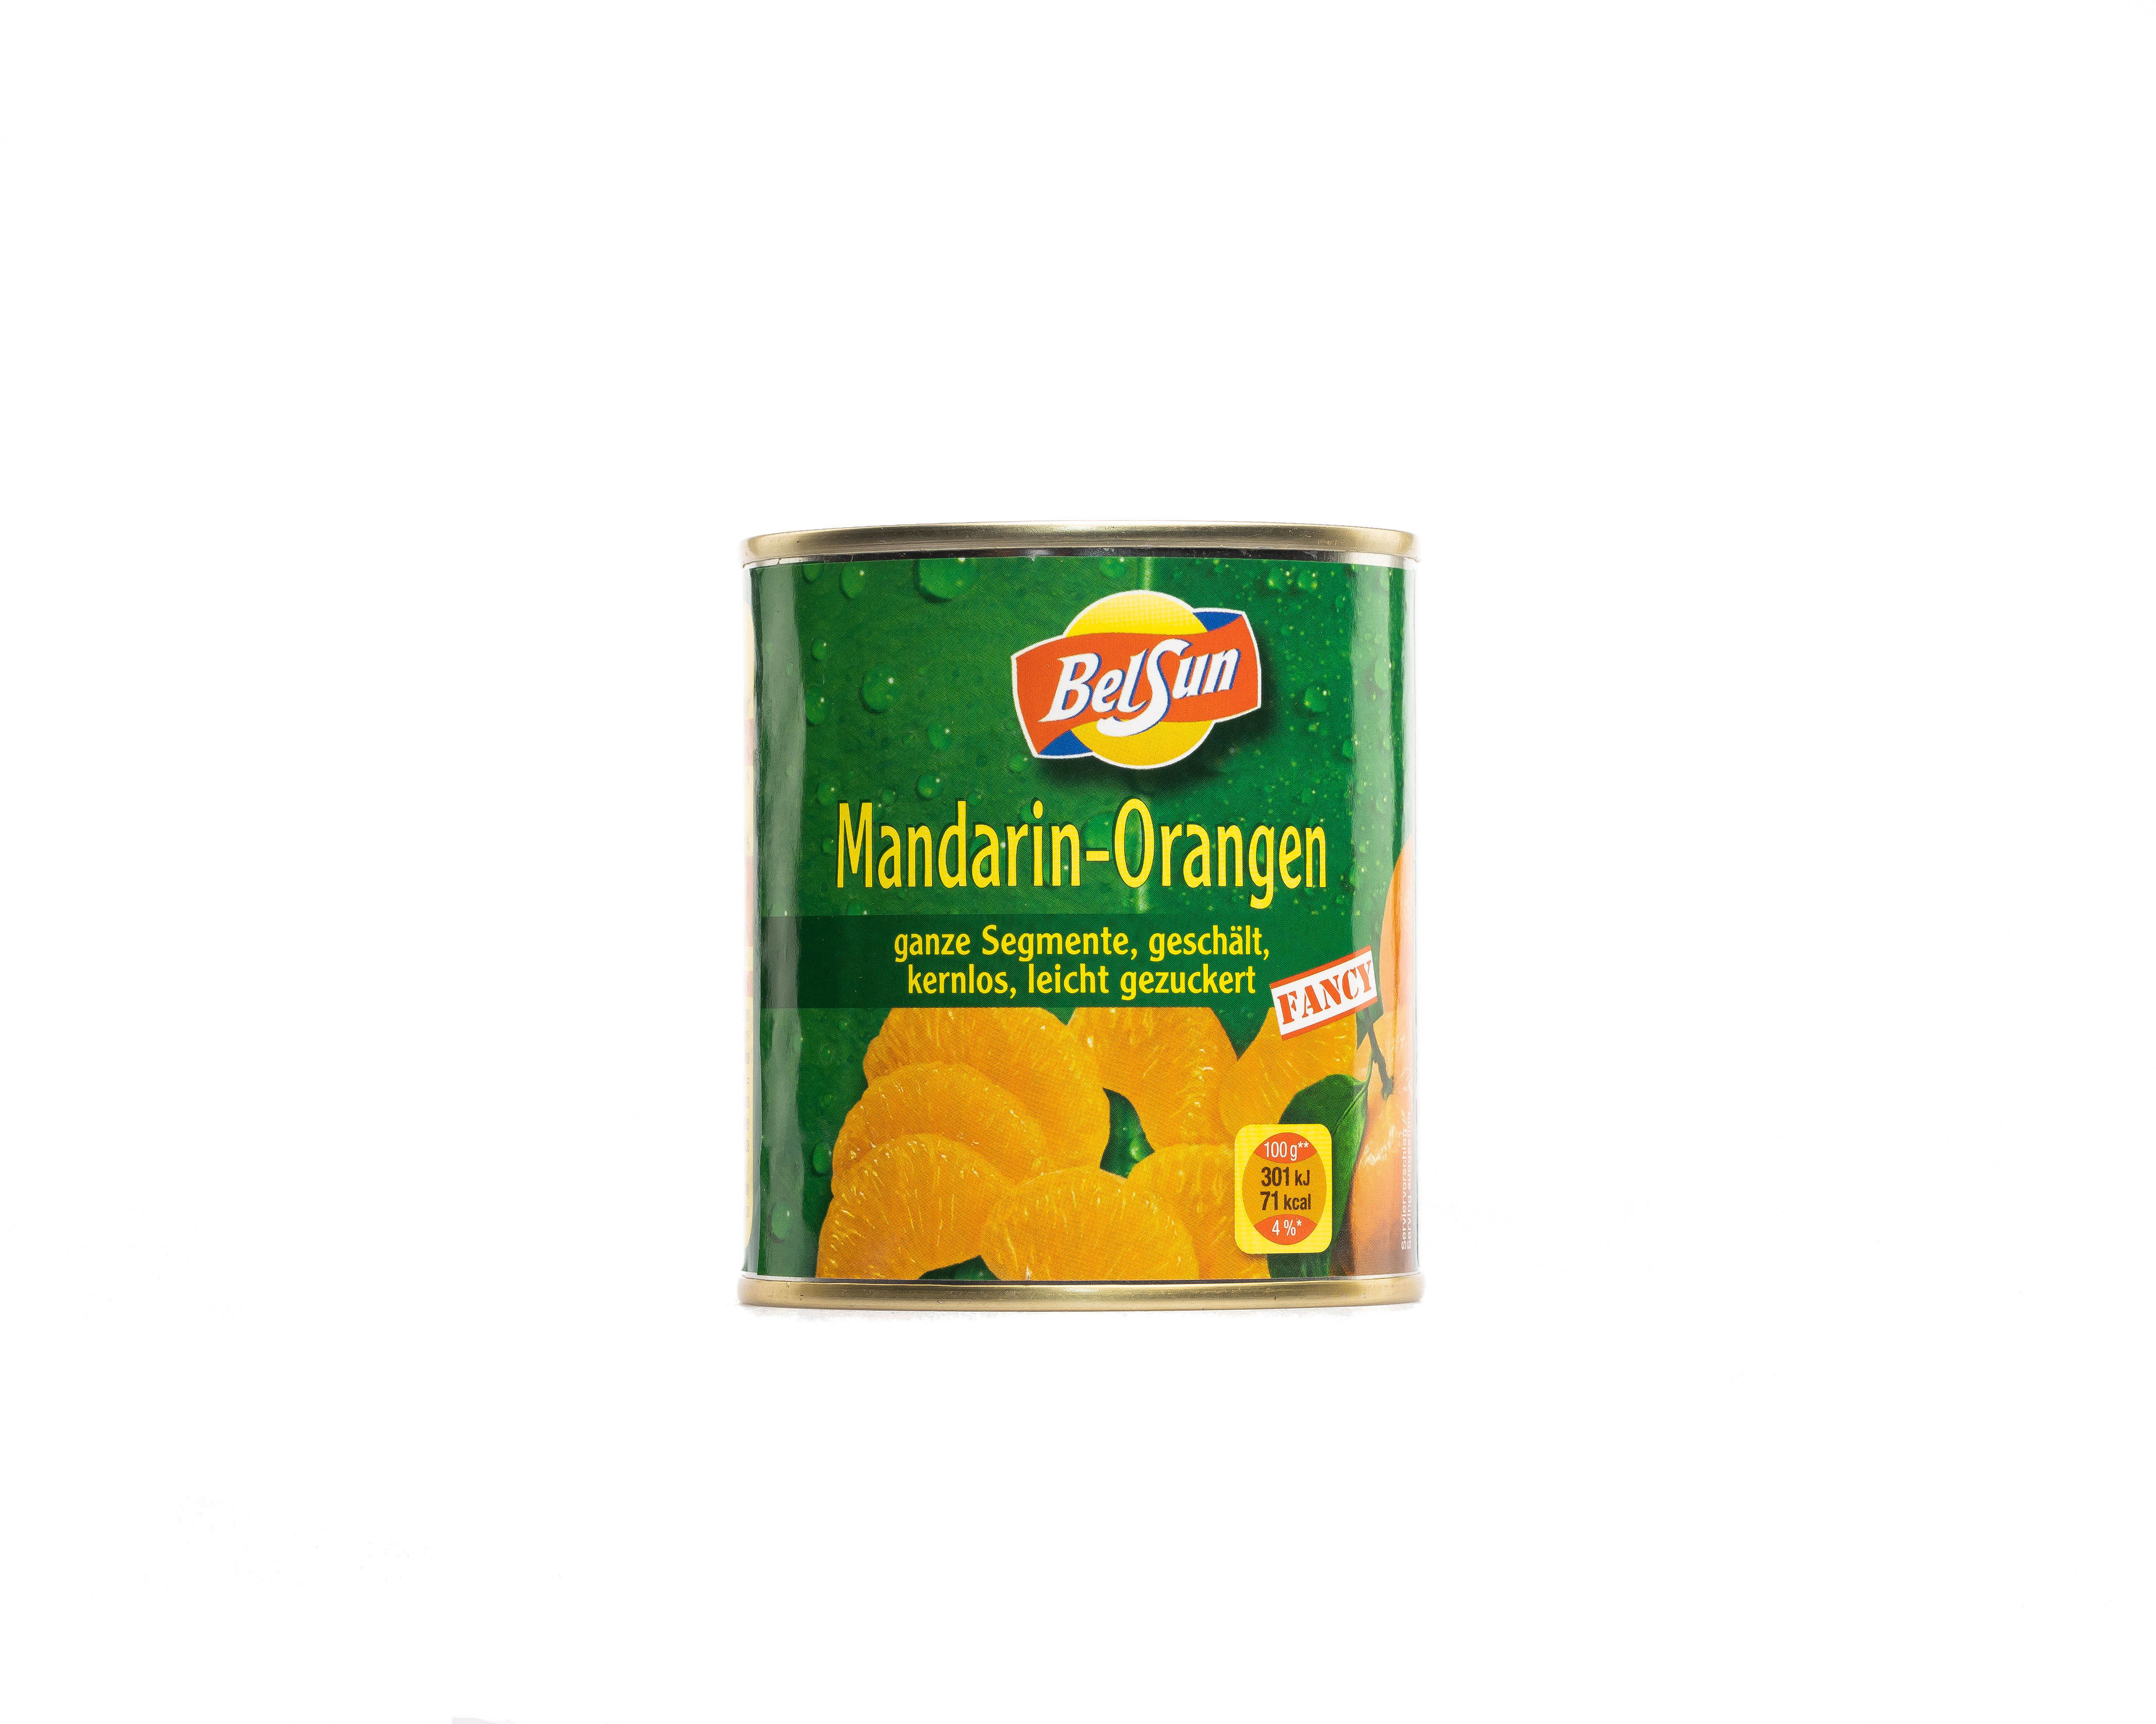 Mandarin-Oranges